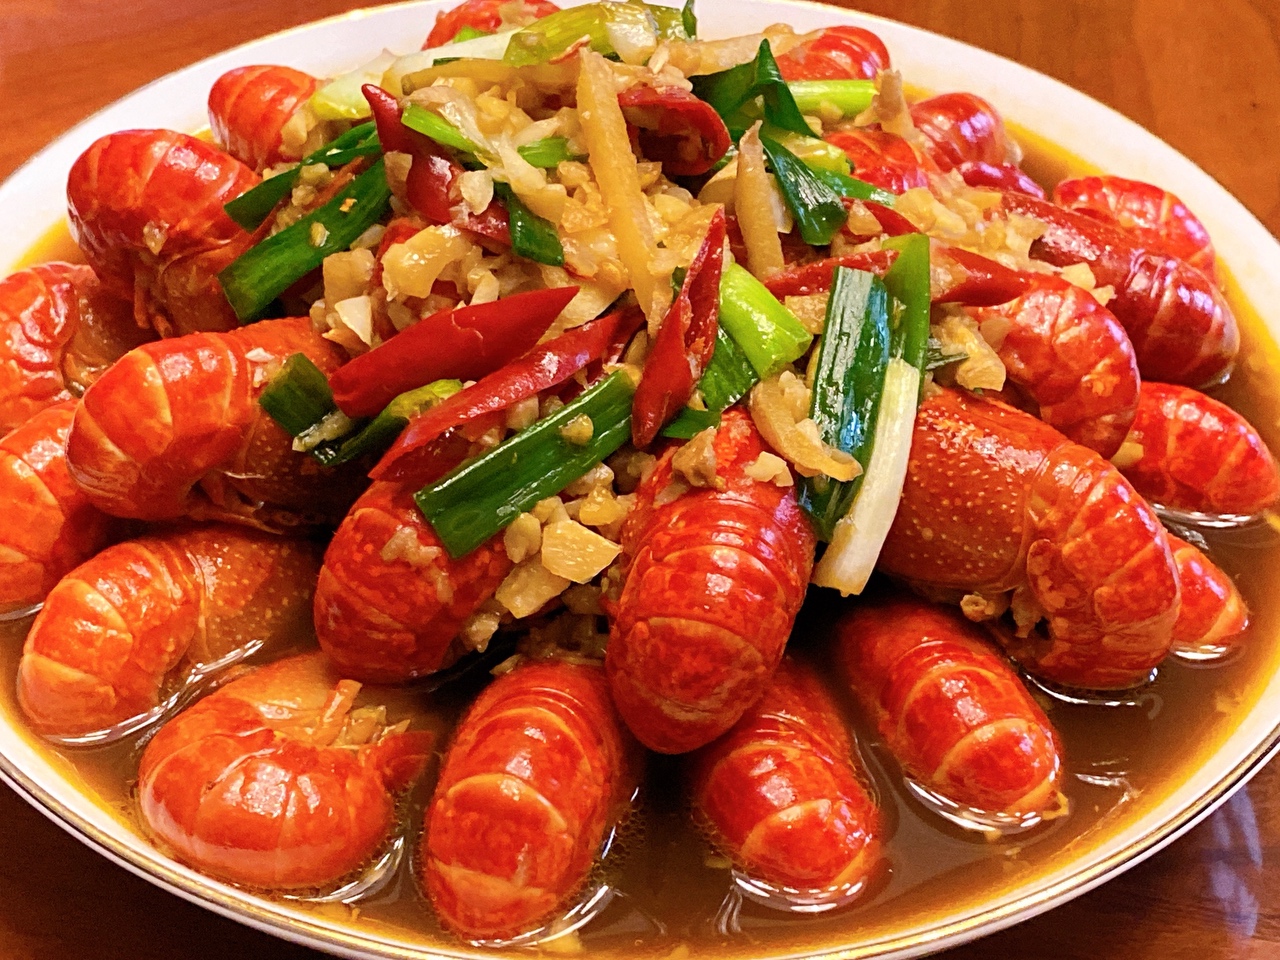 小龙虾的挑选、处理方法与红烧蒜香味小龙虾